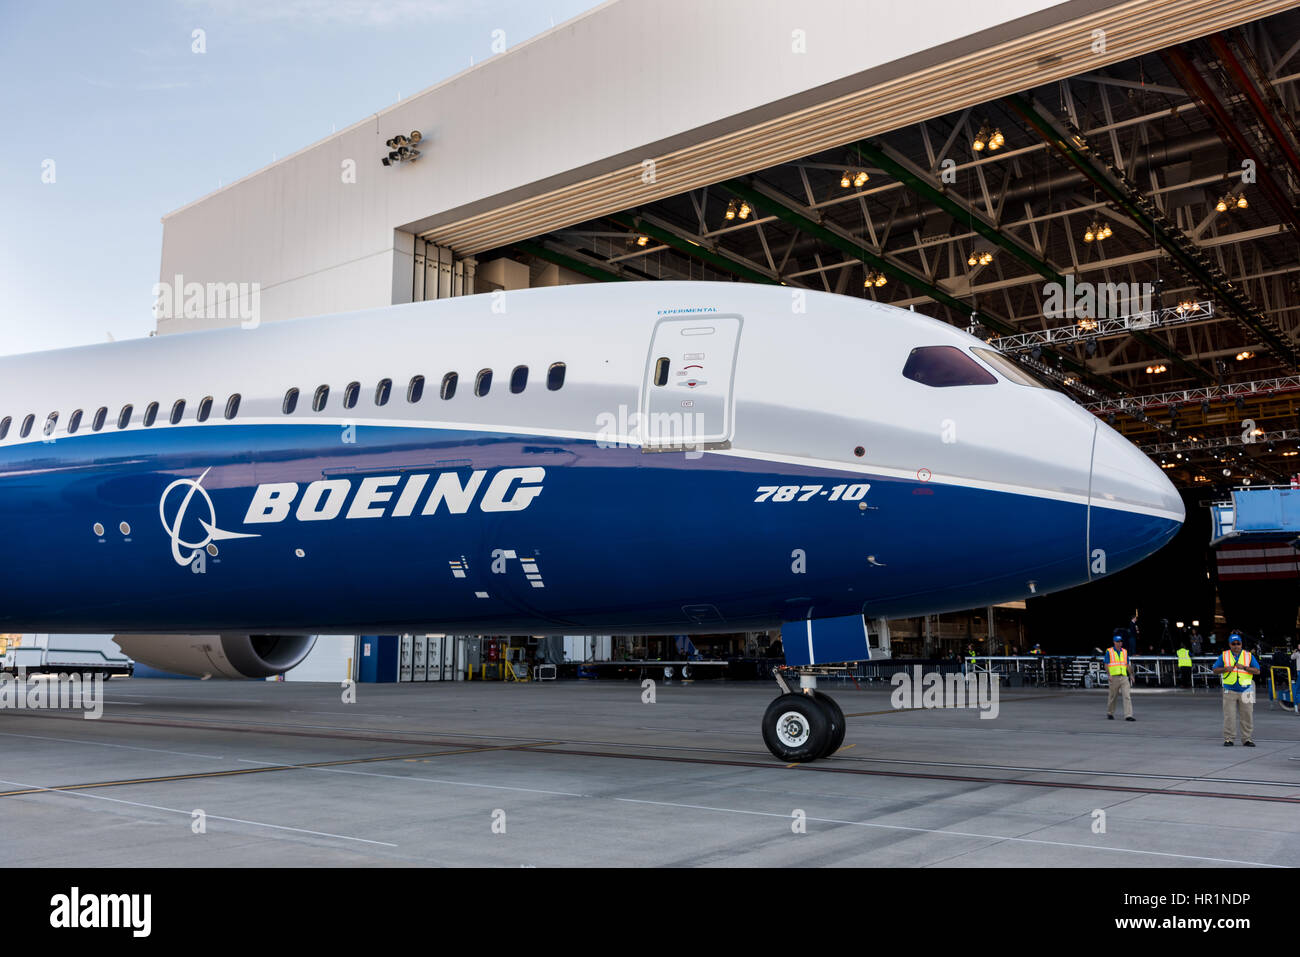 Les nouveaux avions Boeing 787-10 Dreamliner dévoilé à l'usine Boeing, 17 février 2016 à North Charleston, SC. Le président Donald Trump a assisté à la cérémonie de lancement pour la version vinyle de l'avion capable de transporter 330 passagers sur 7 000 milles marins. Banque D'Images